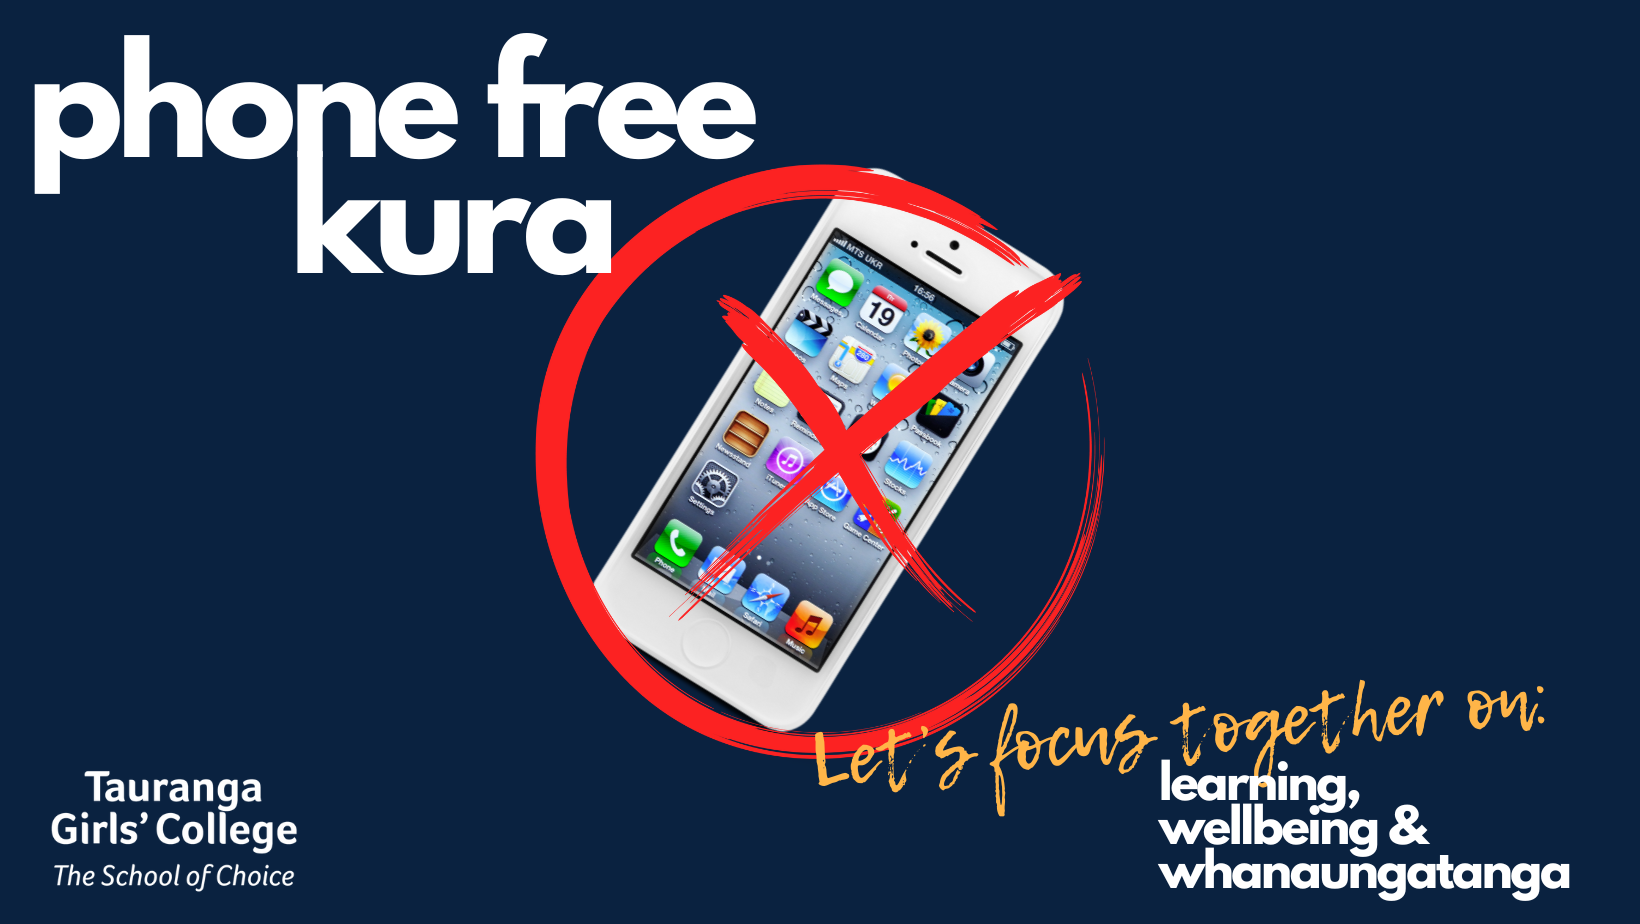 Copy of Phone Free Kura (Facebook Cover).png